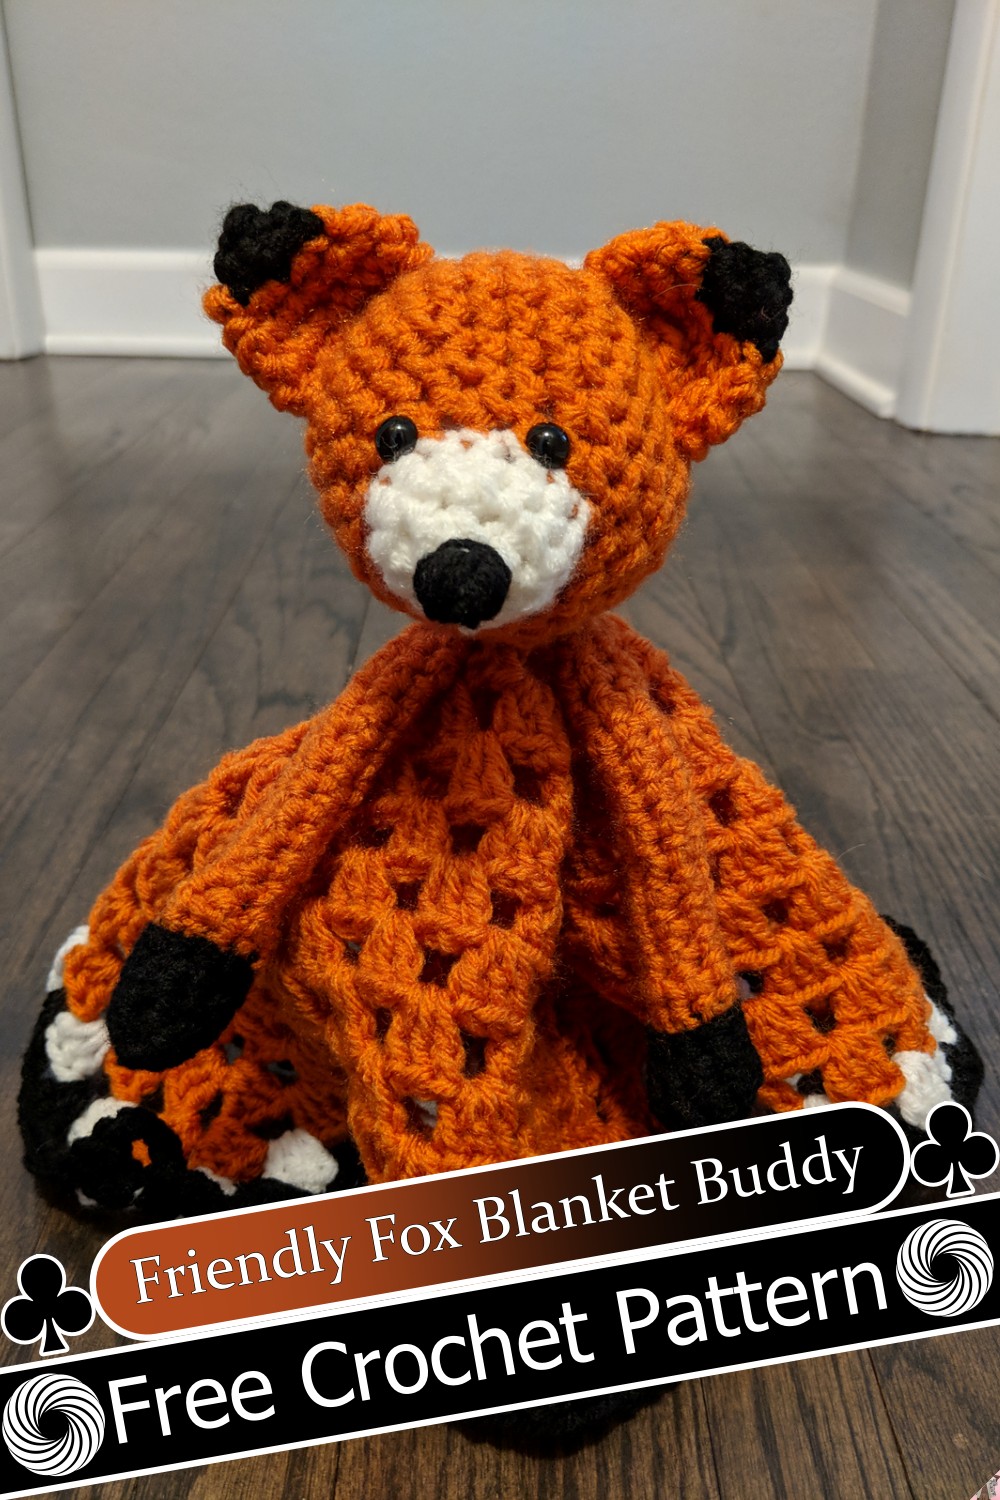 Friendly Fox Blanket Buddy